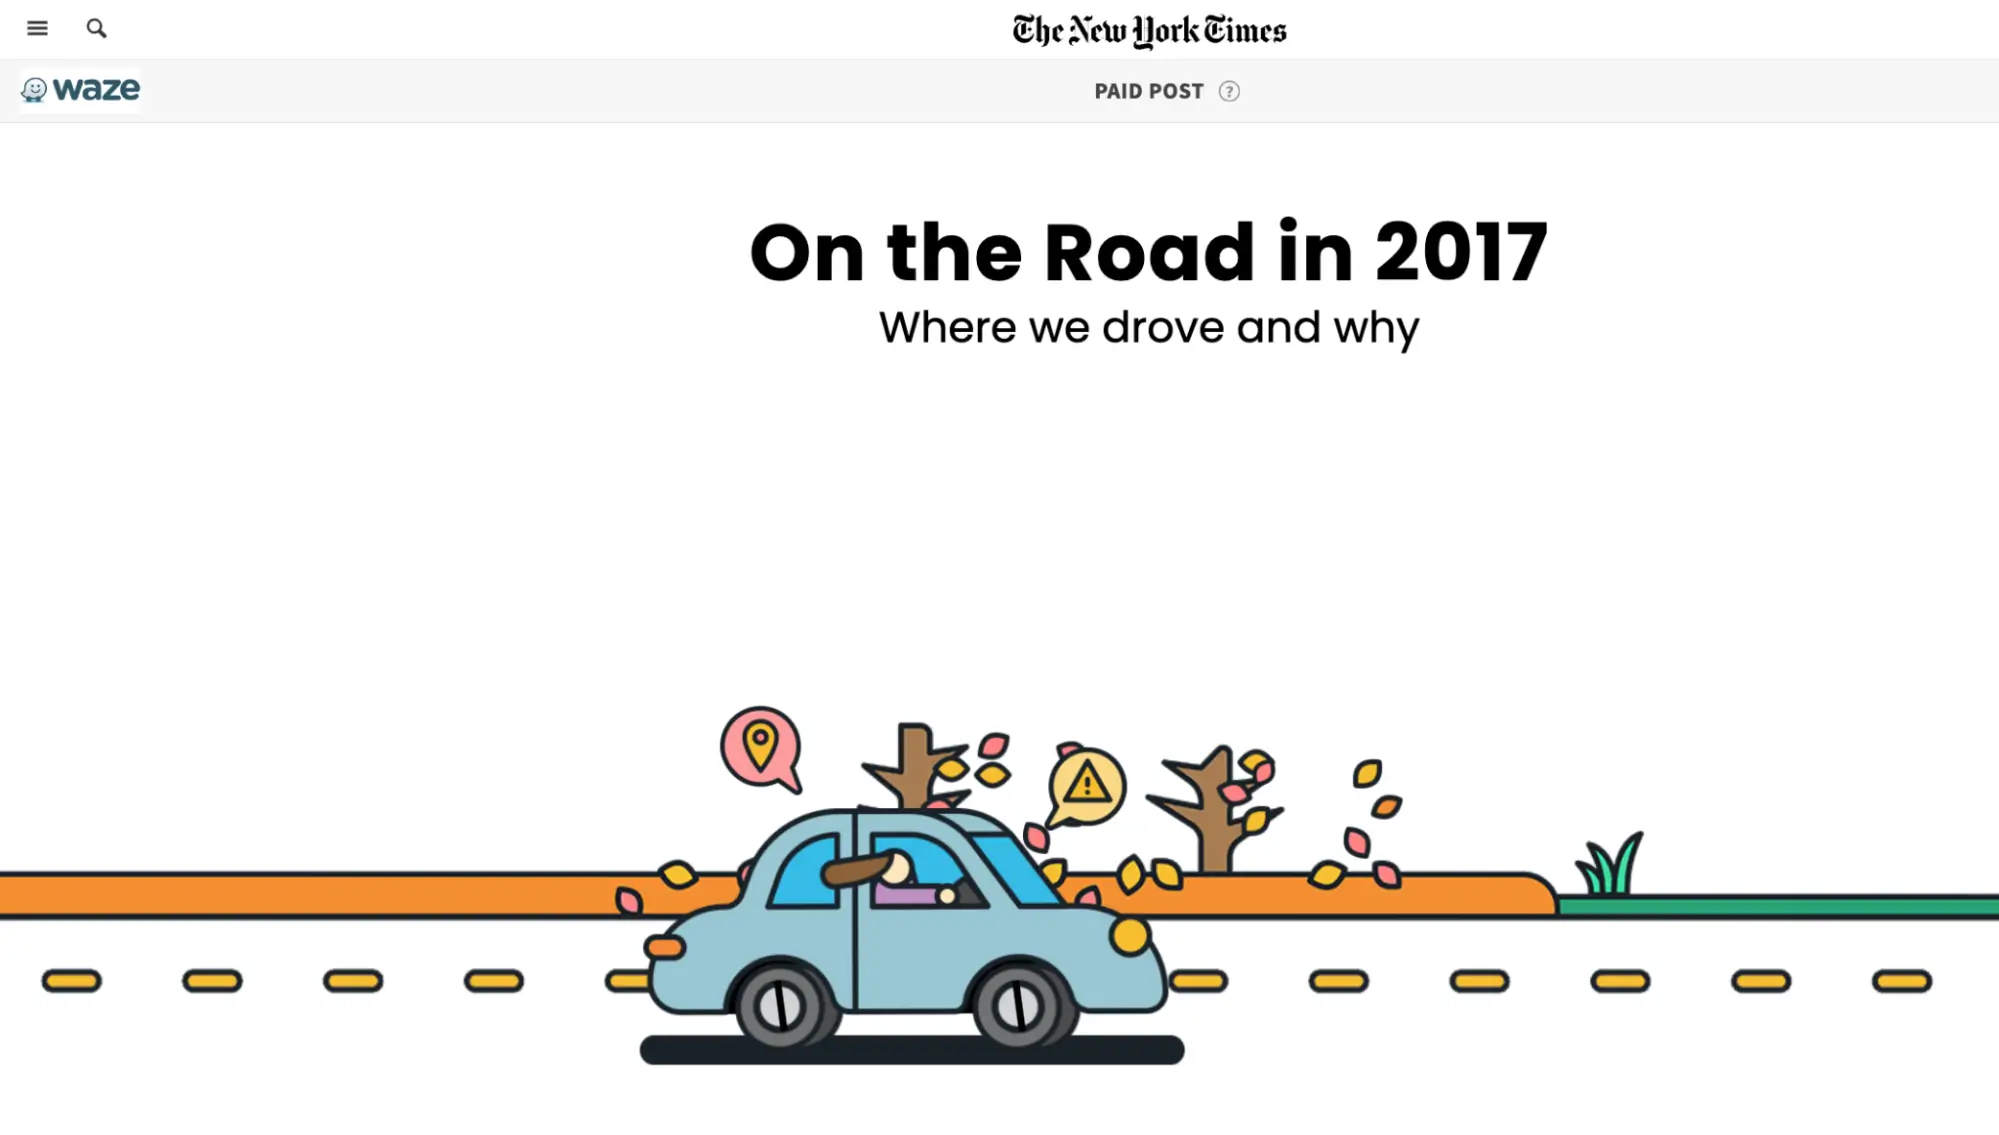 Esta imagem mostra a campanha “On the Road” do Waze, criada em parceria com o New York Times, apresentando conteúdo interativo baseado em dados reais de aplicativos. A campanha teve como objetivo descobrir tendências impulsionadoras e as razões por trás delas, oferecendo conteúdo informativo e compartilhável por meio de uma página interativa com gráficos cativantes.